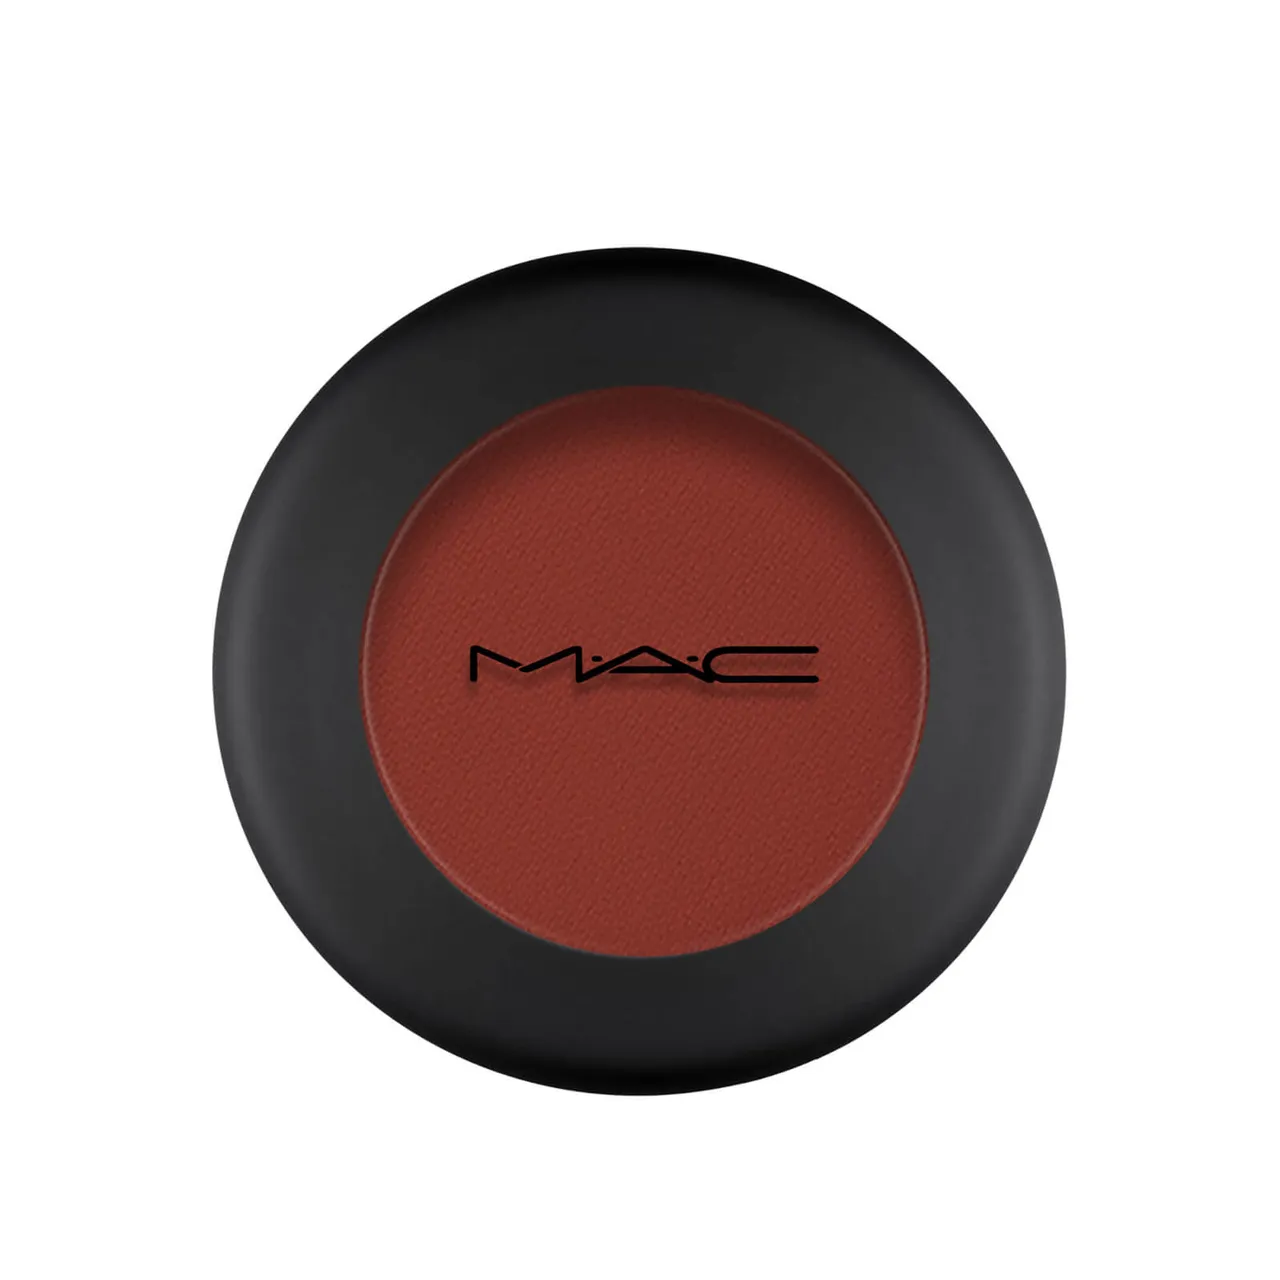 MAC Powder Kiss Soft Matte Eyeshadow (Various Shades) - Devoted to Chili